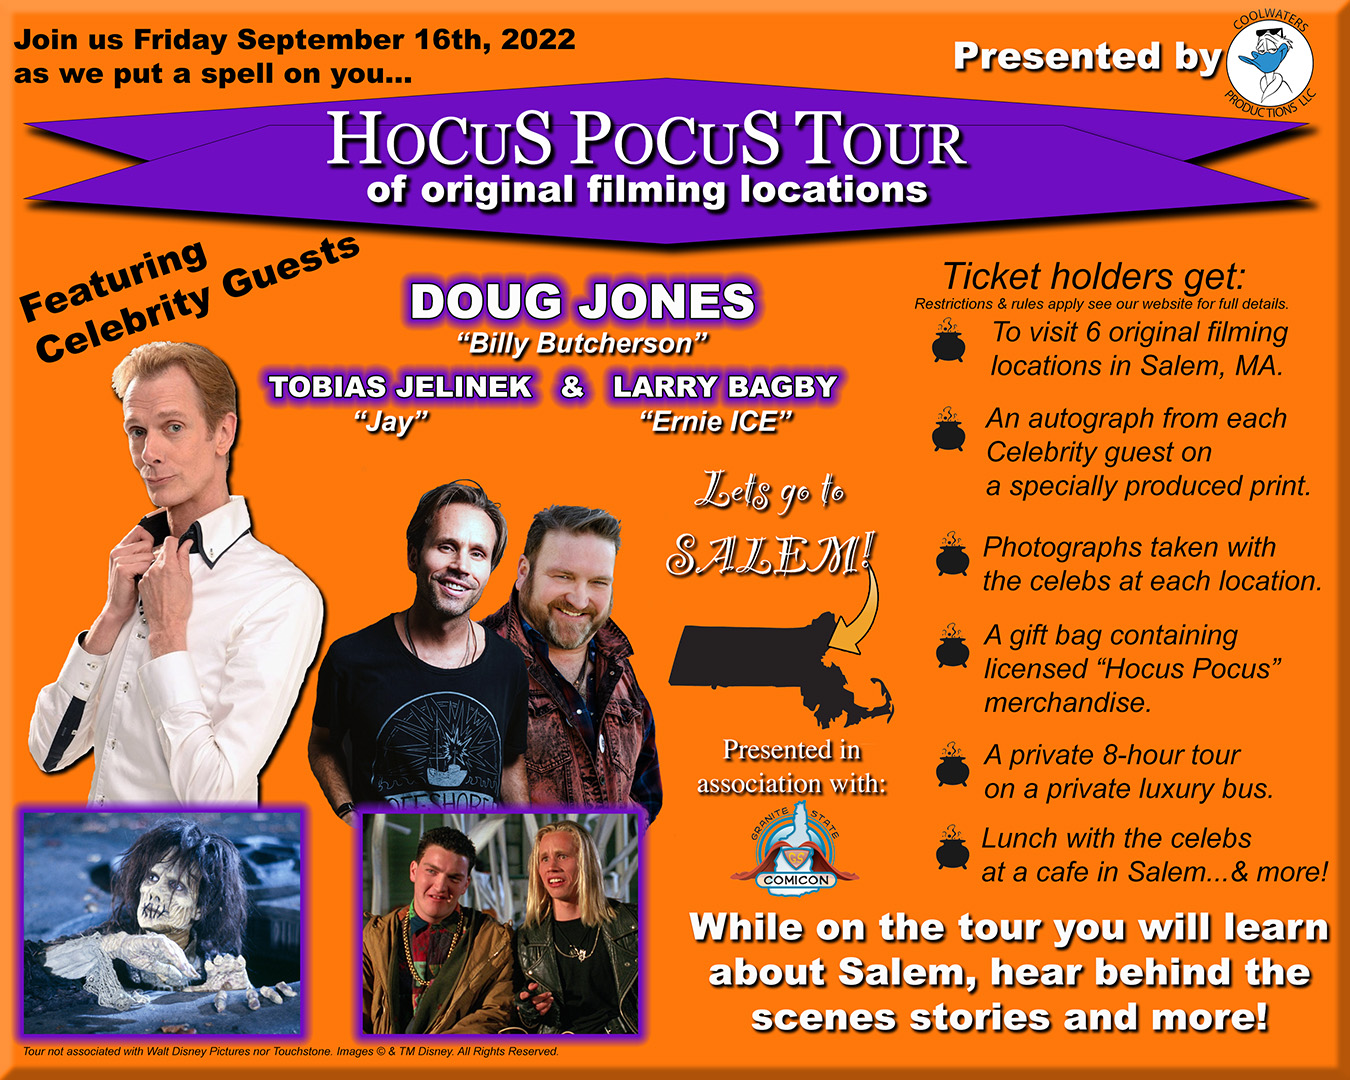 hocus pocus tour dates